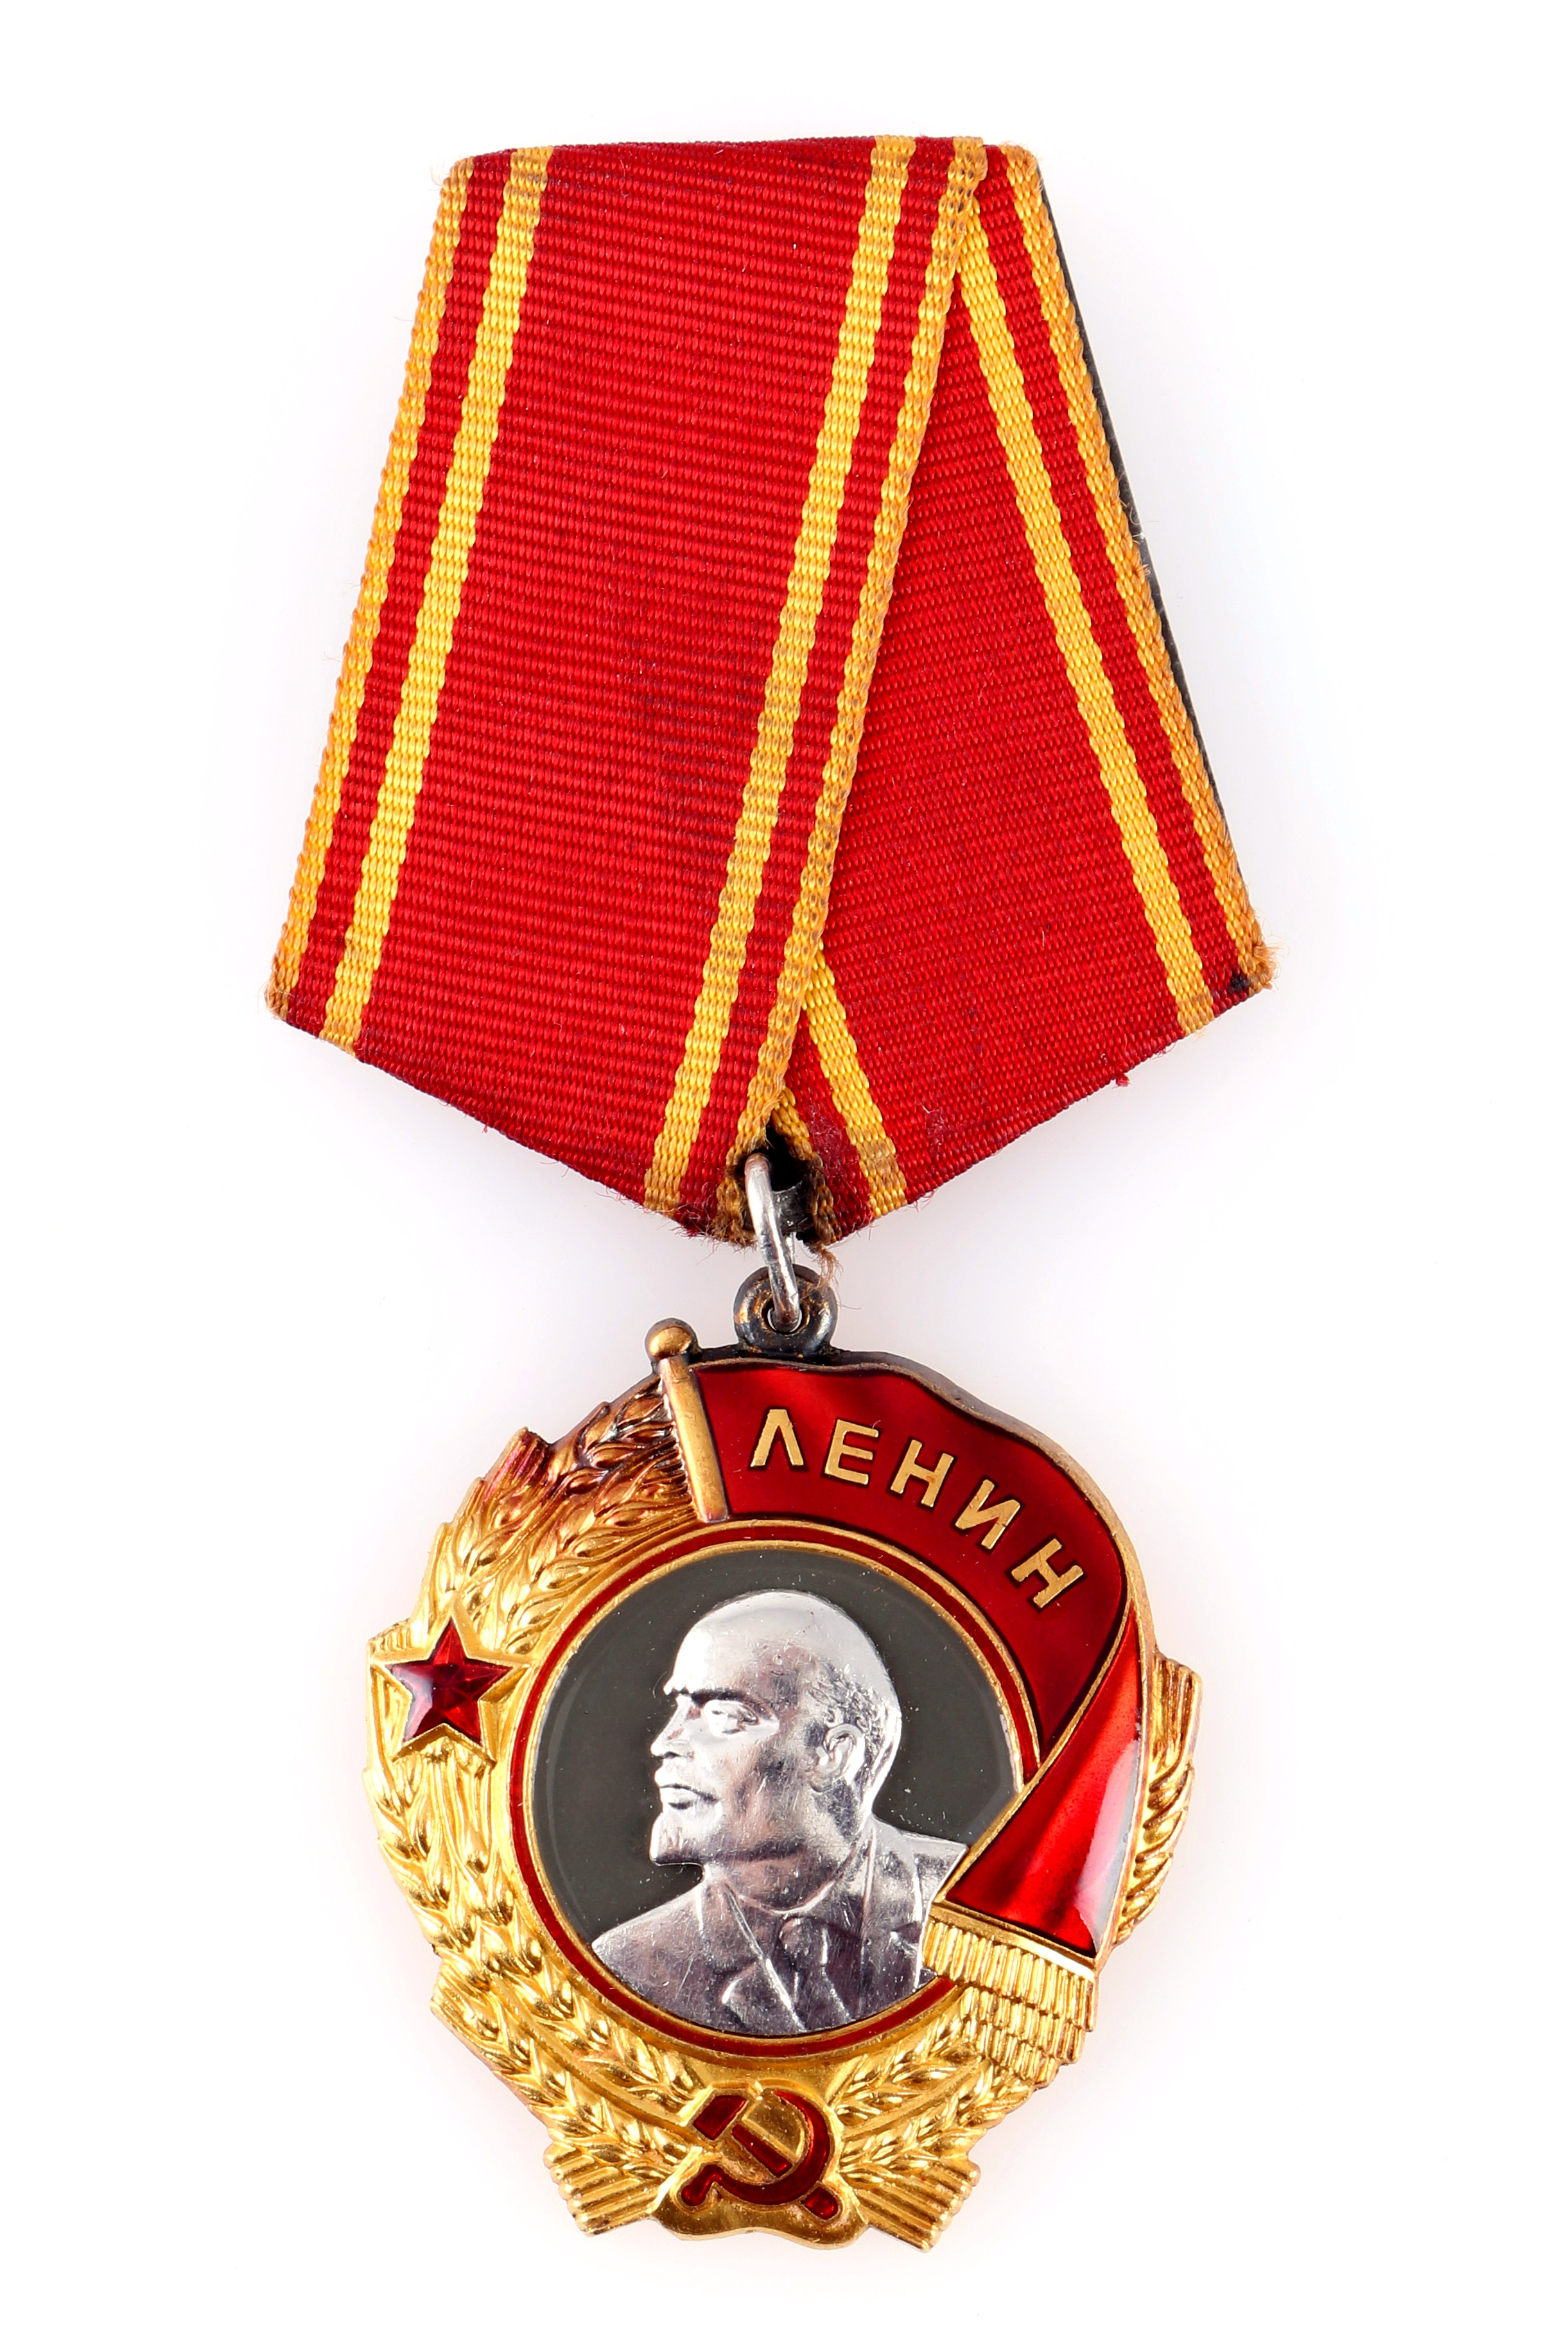 Lenin gold medal soviet union, Leninorden Sowjetunion,